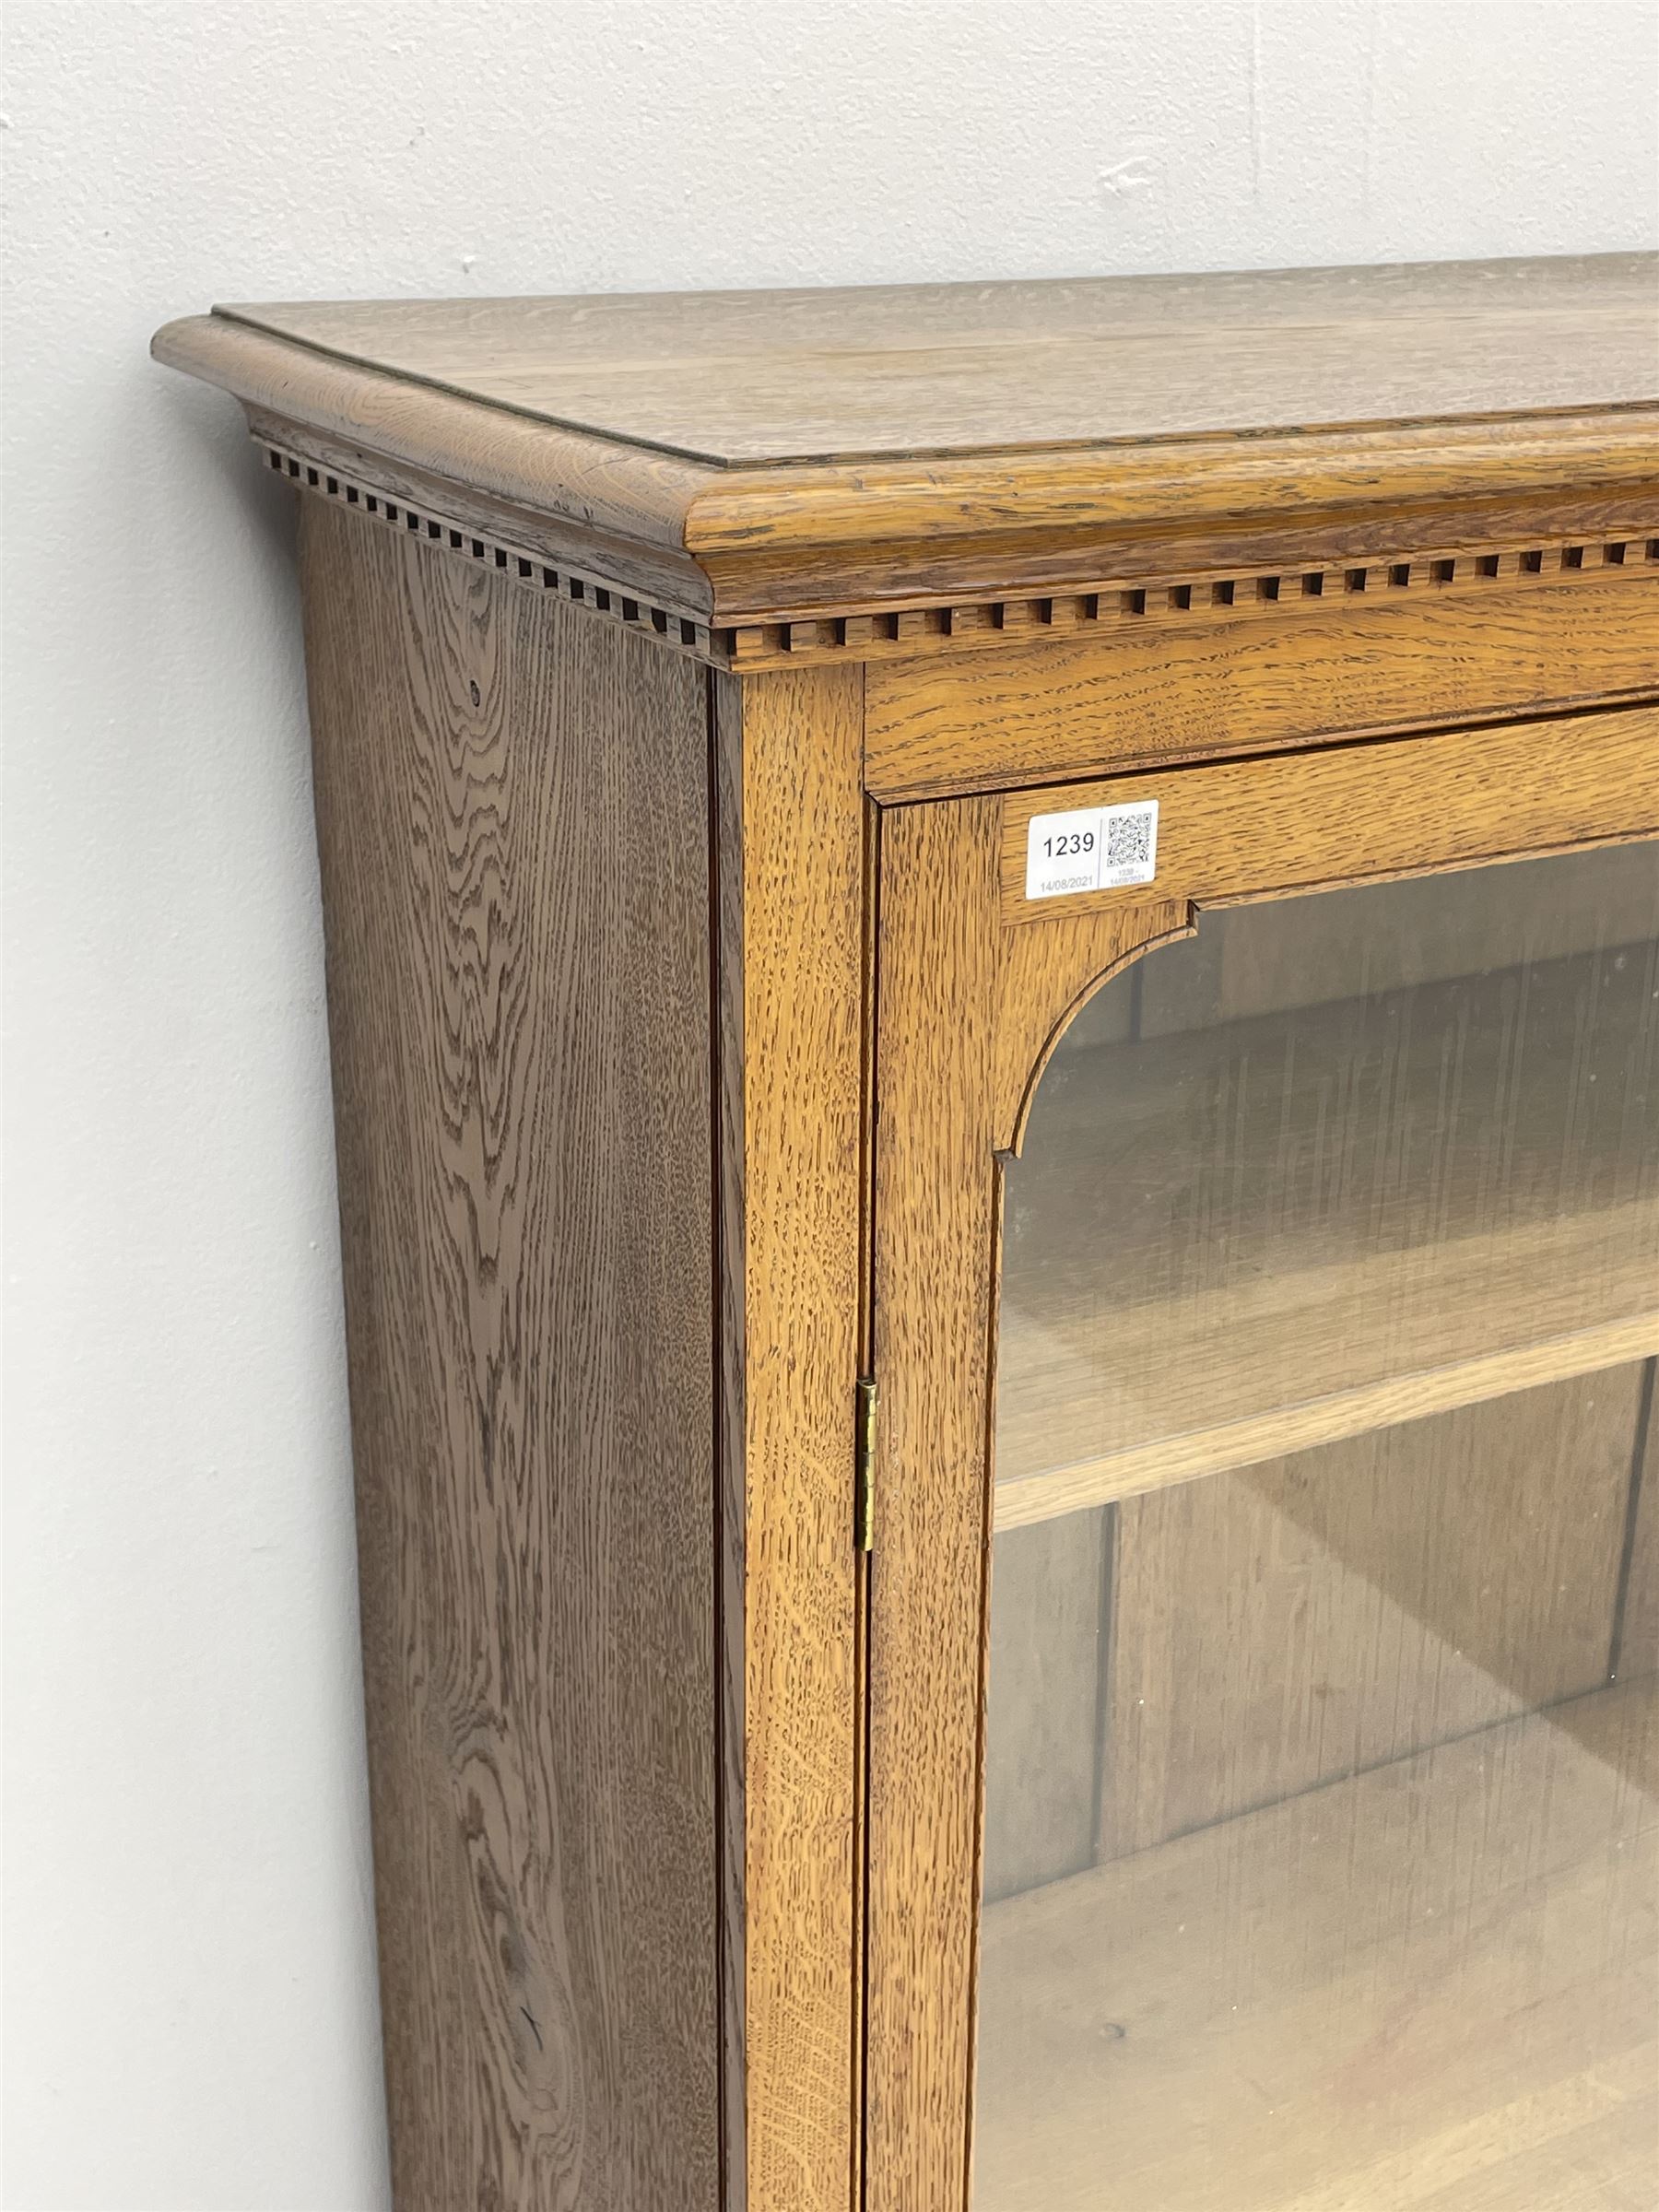 Edwardian oak glazed bookcase with drawer - Image 2 of 3